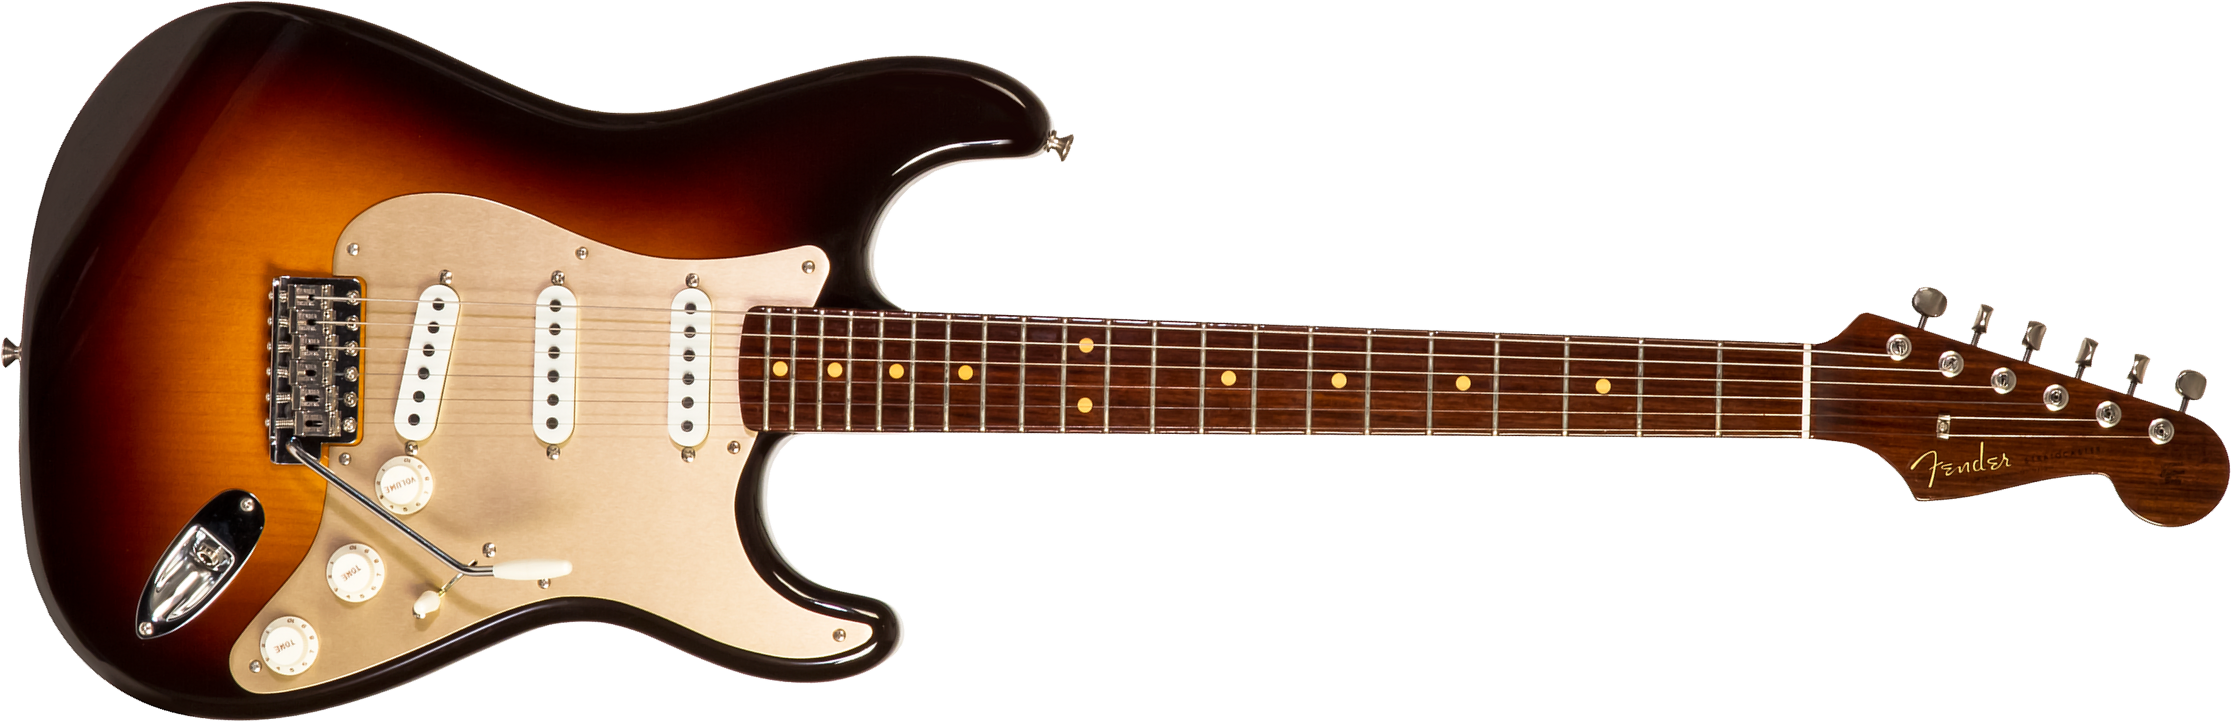 Fender Custom Shop Strat 1957 3s Trem Rw #cz548509 - Closet Classic 2-color Sunburst - Guitare Électrique Forme Tel - Main picture